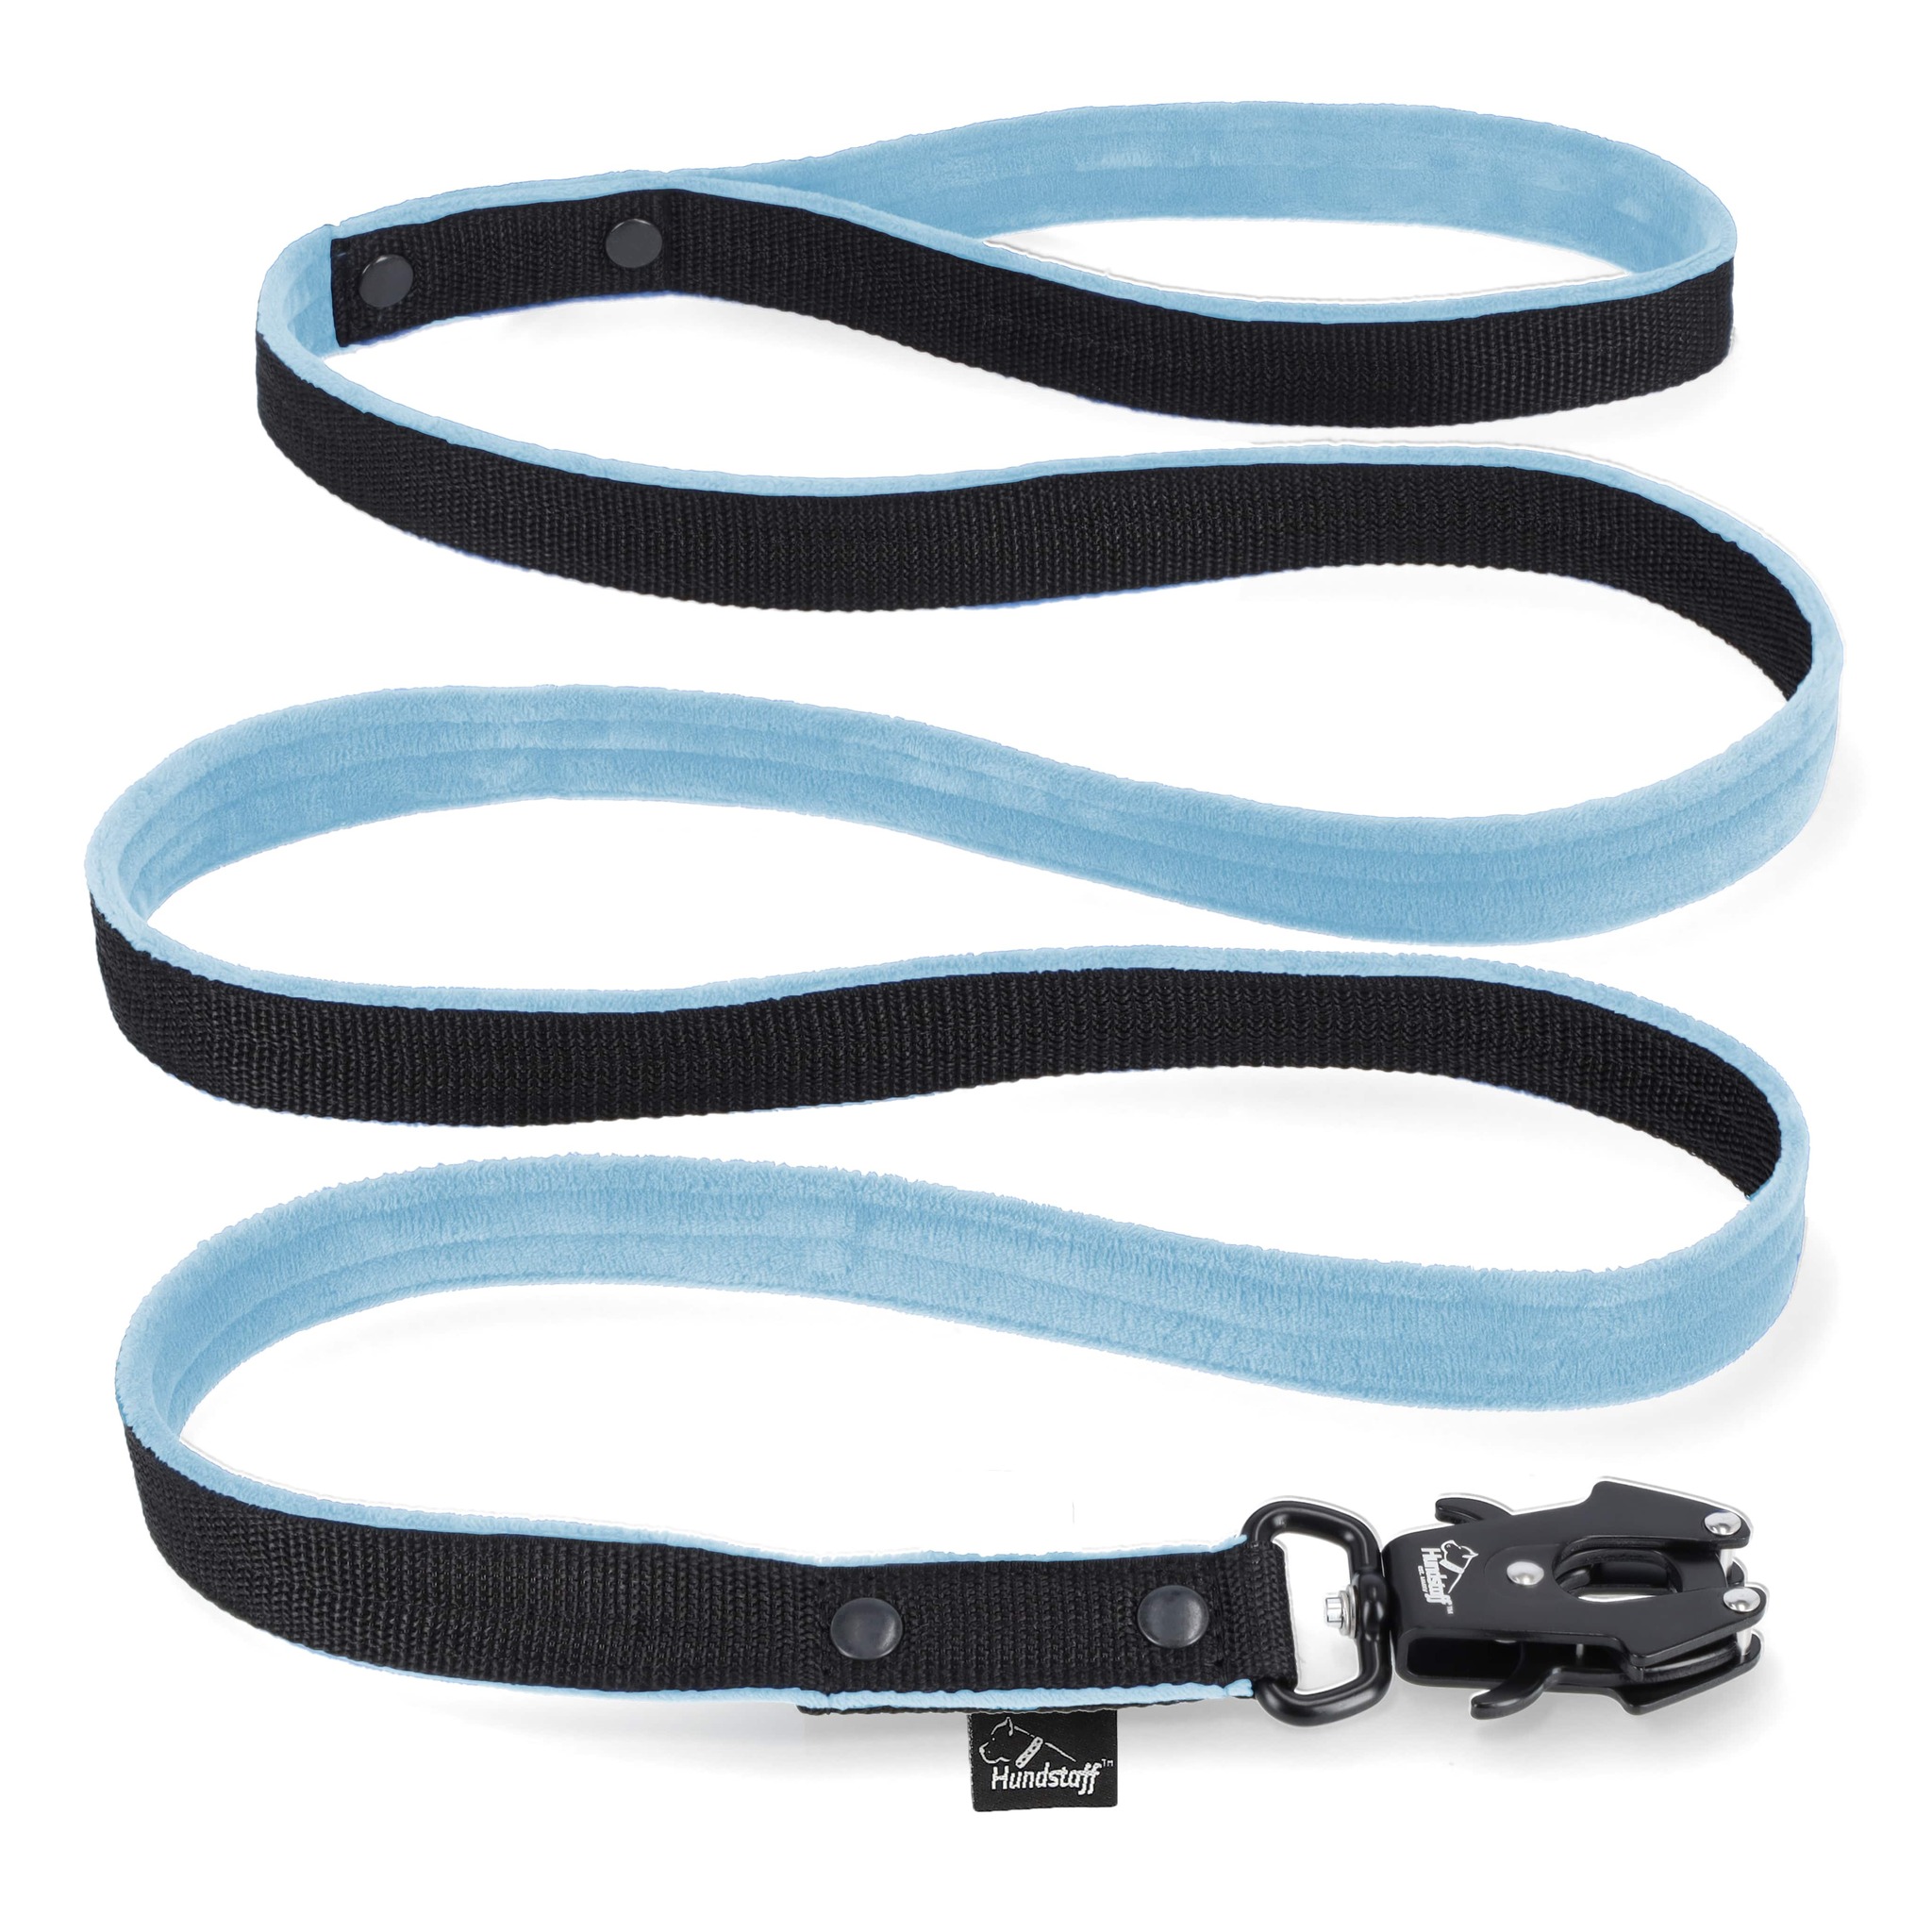 Walk Leash Black Edition Ocean Blue - Säkert nylonkoppel i olika längder